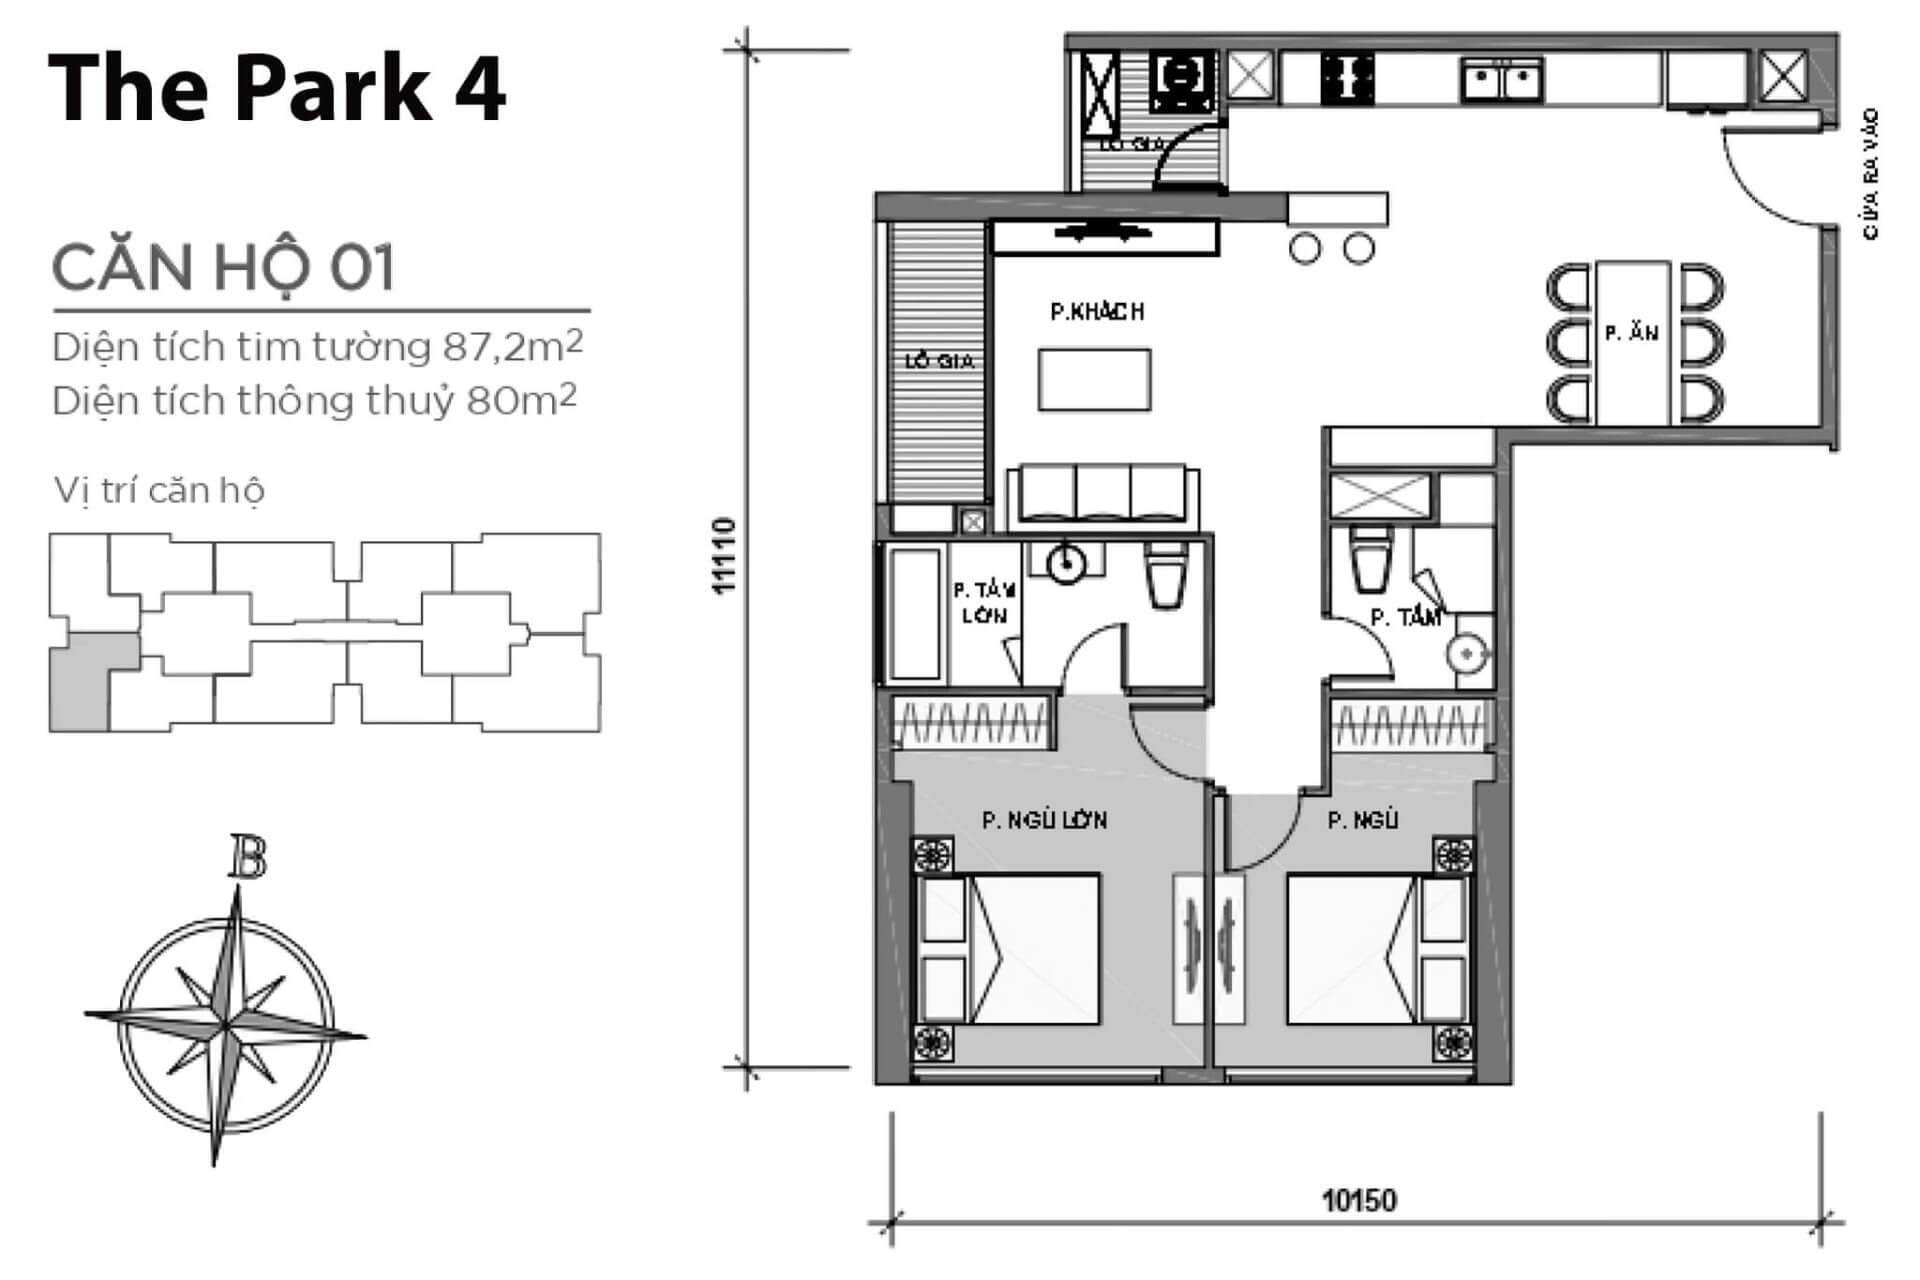 mặt bằng layout căn hộ số 01 Park 4 Vinhomes Central Park